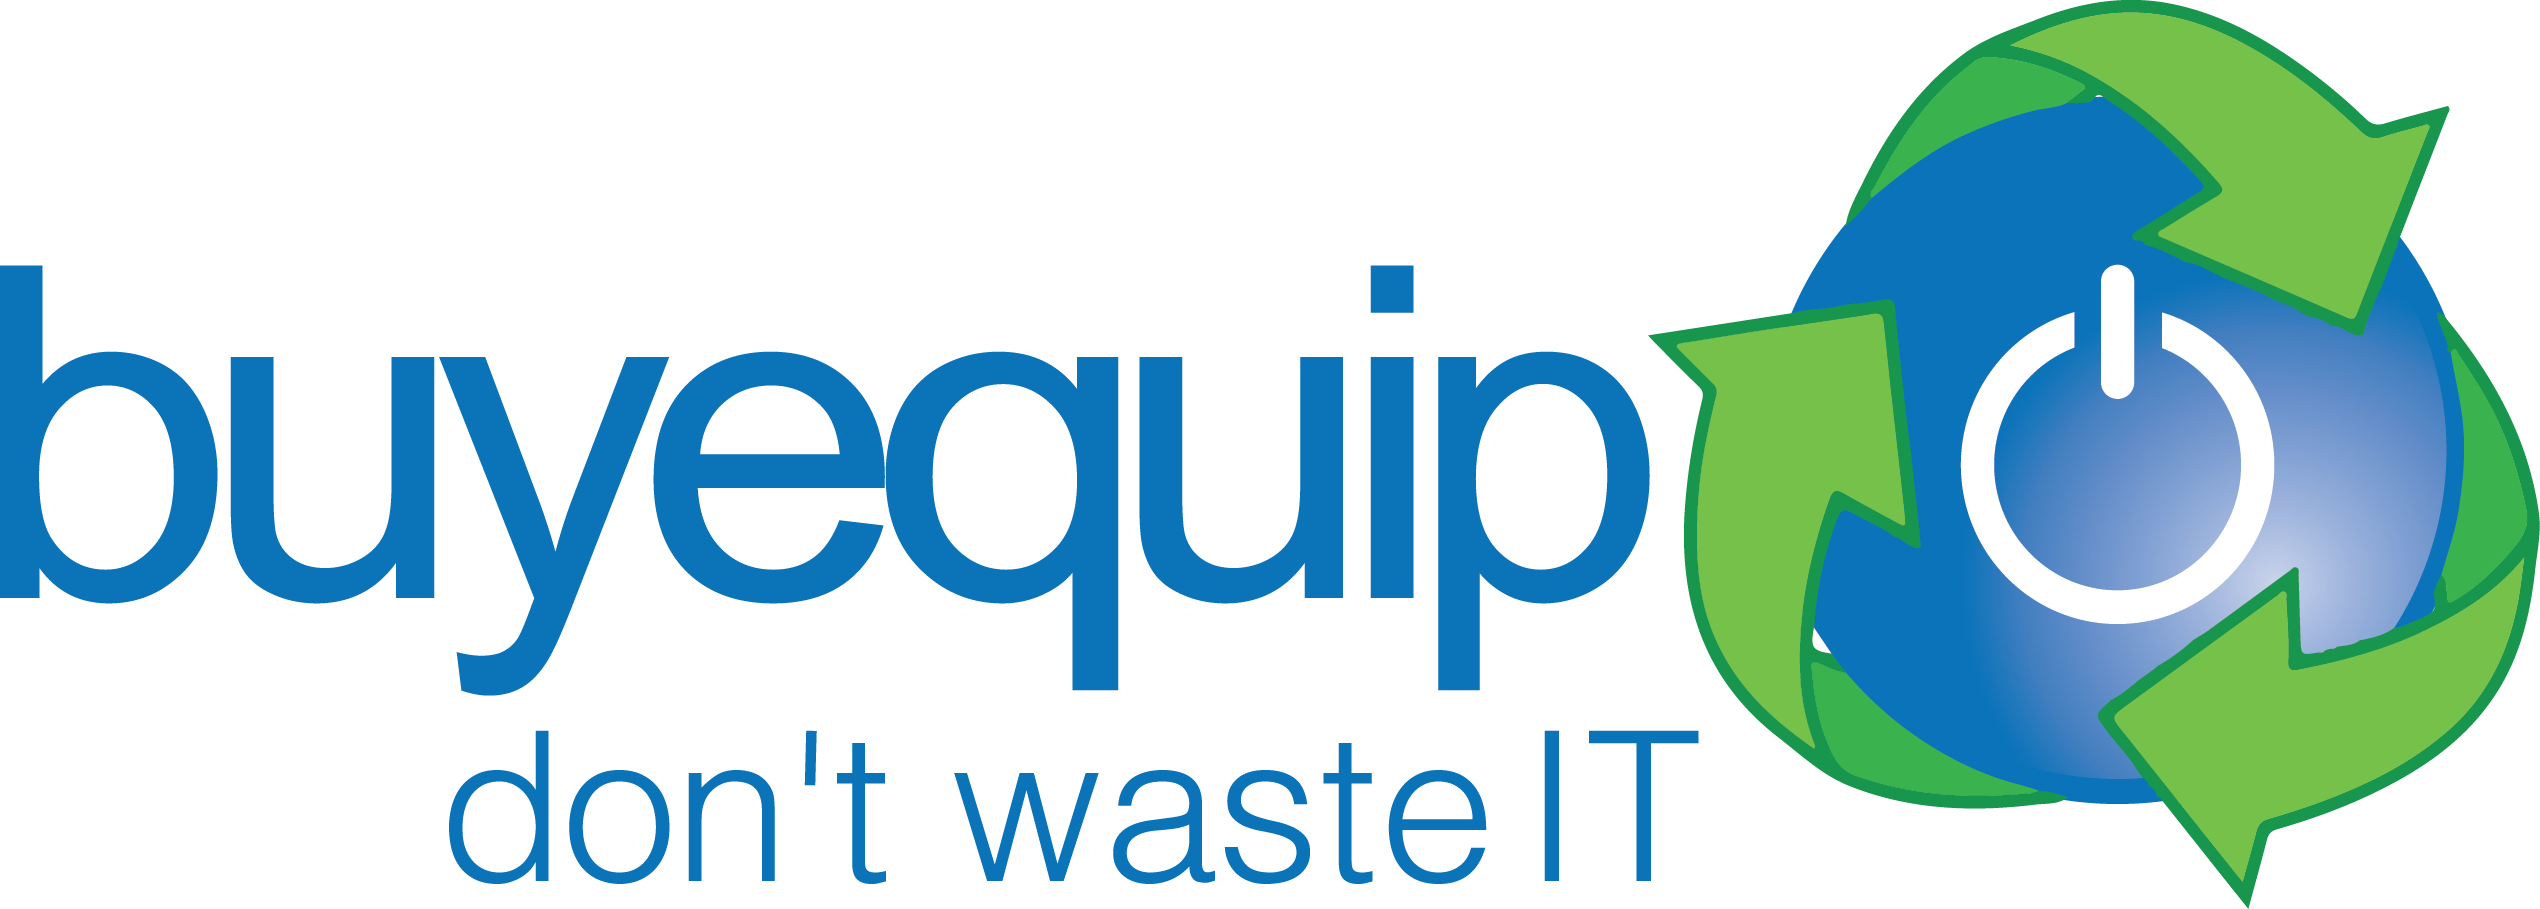 Buyequip Ewaste Recycling - Waste Management (2540x909)